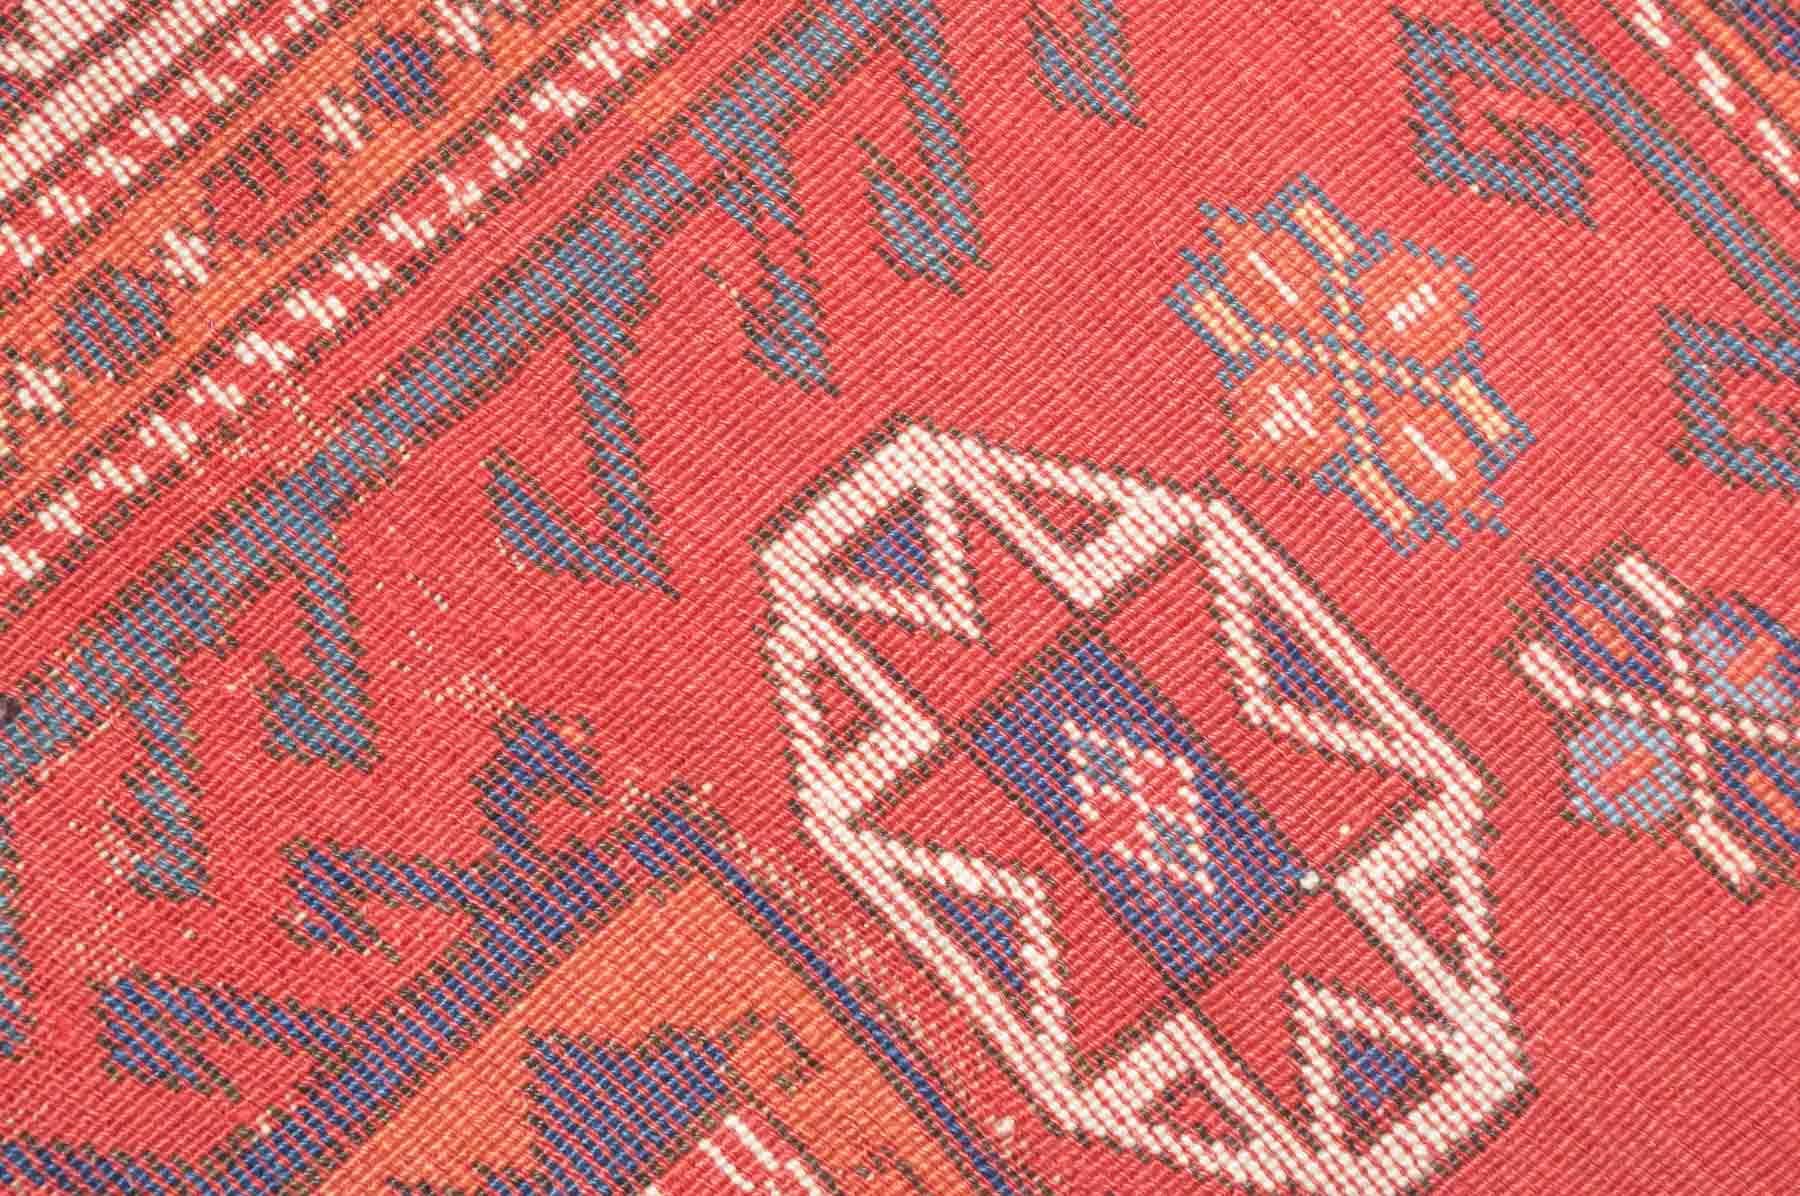 alter Orientalischer Teppich / Old oriental carpethandgeknüpt, ca. 215 cm x 147 cm, abgetreten mit - Image 2 of 2